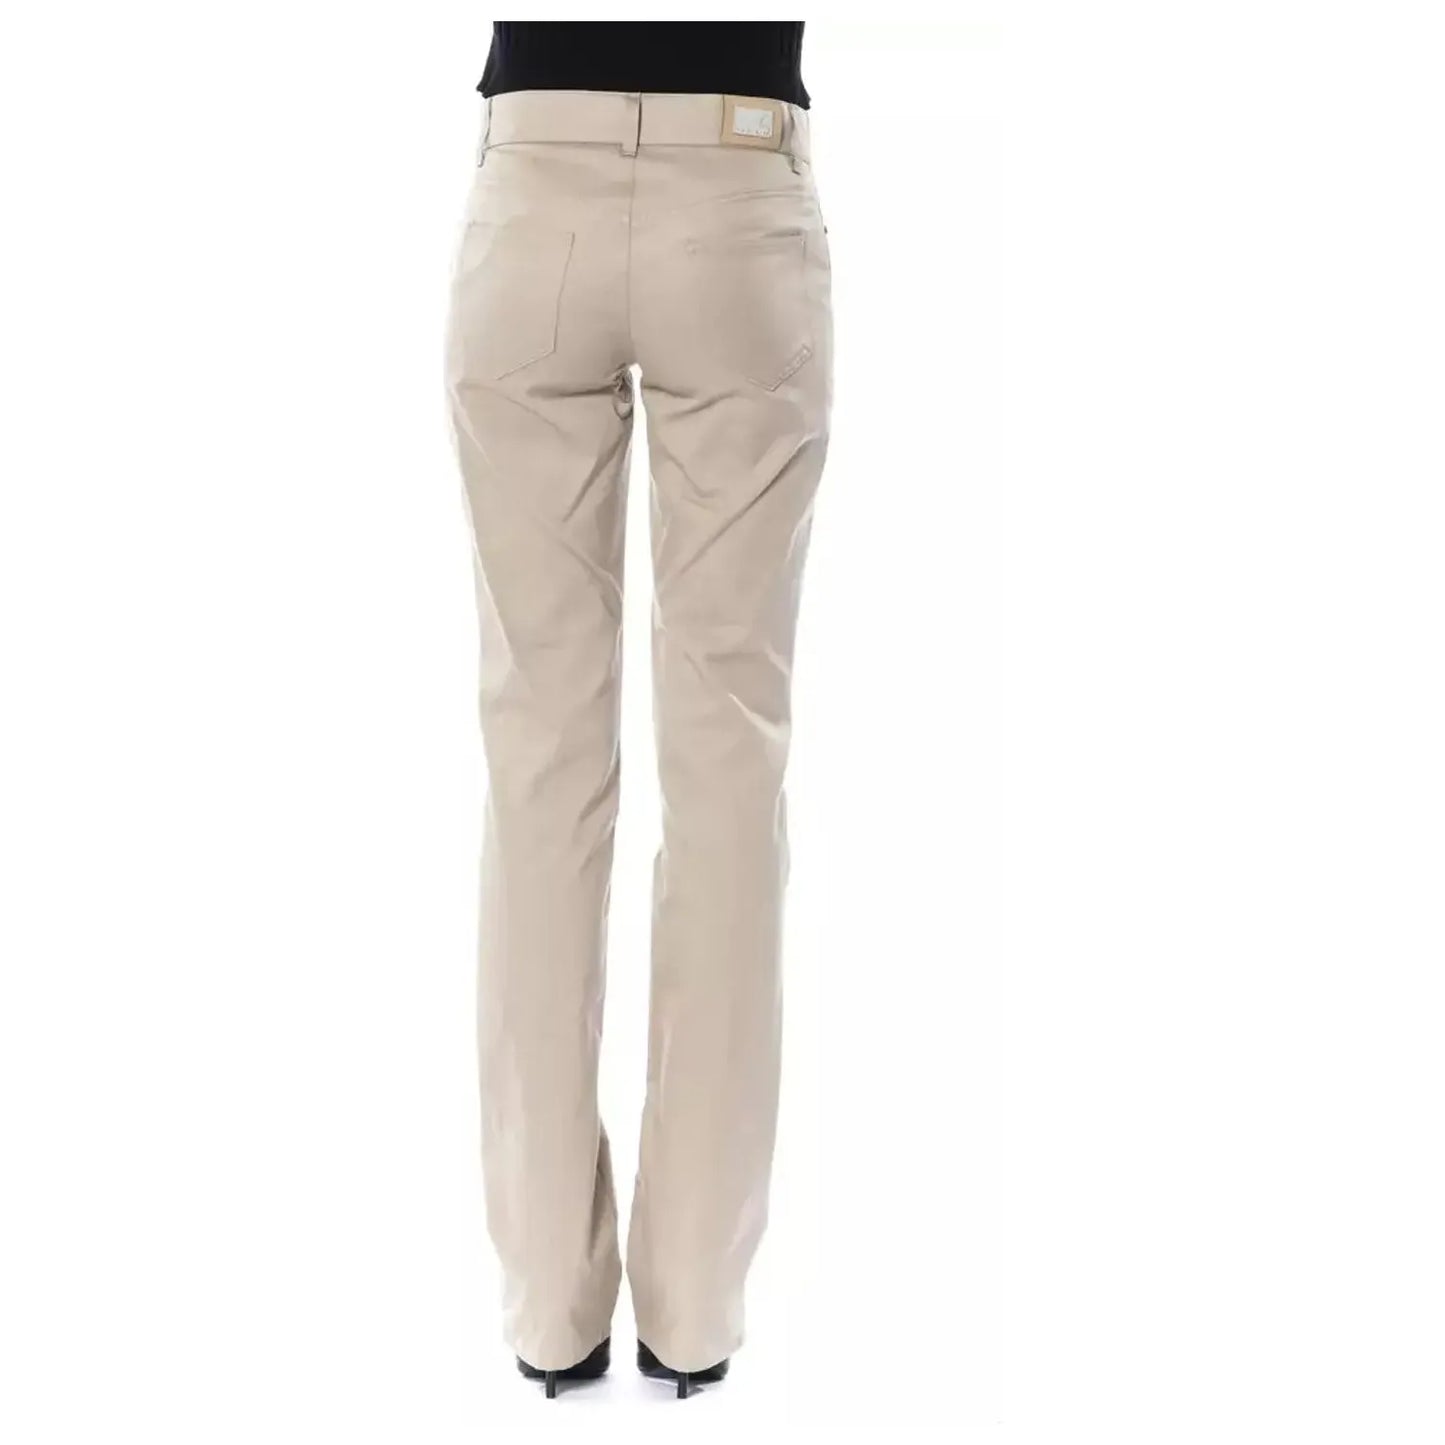 BYBLOS Elegant Beige Cotton Trousers beige-cotton-jeans-pant-11 stock_product_image_17631_142026936-15-a41bfd9f-e45.webp